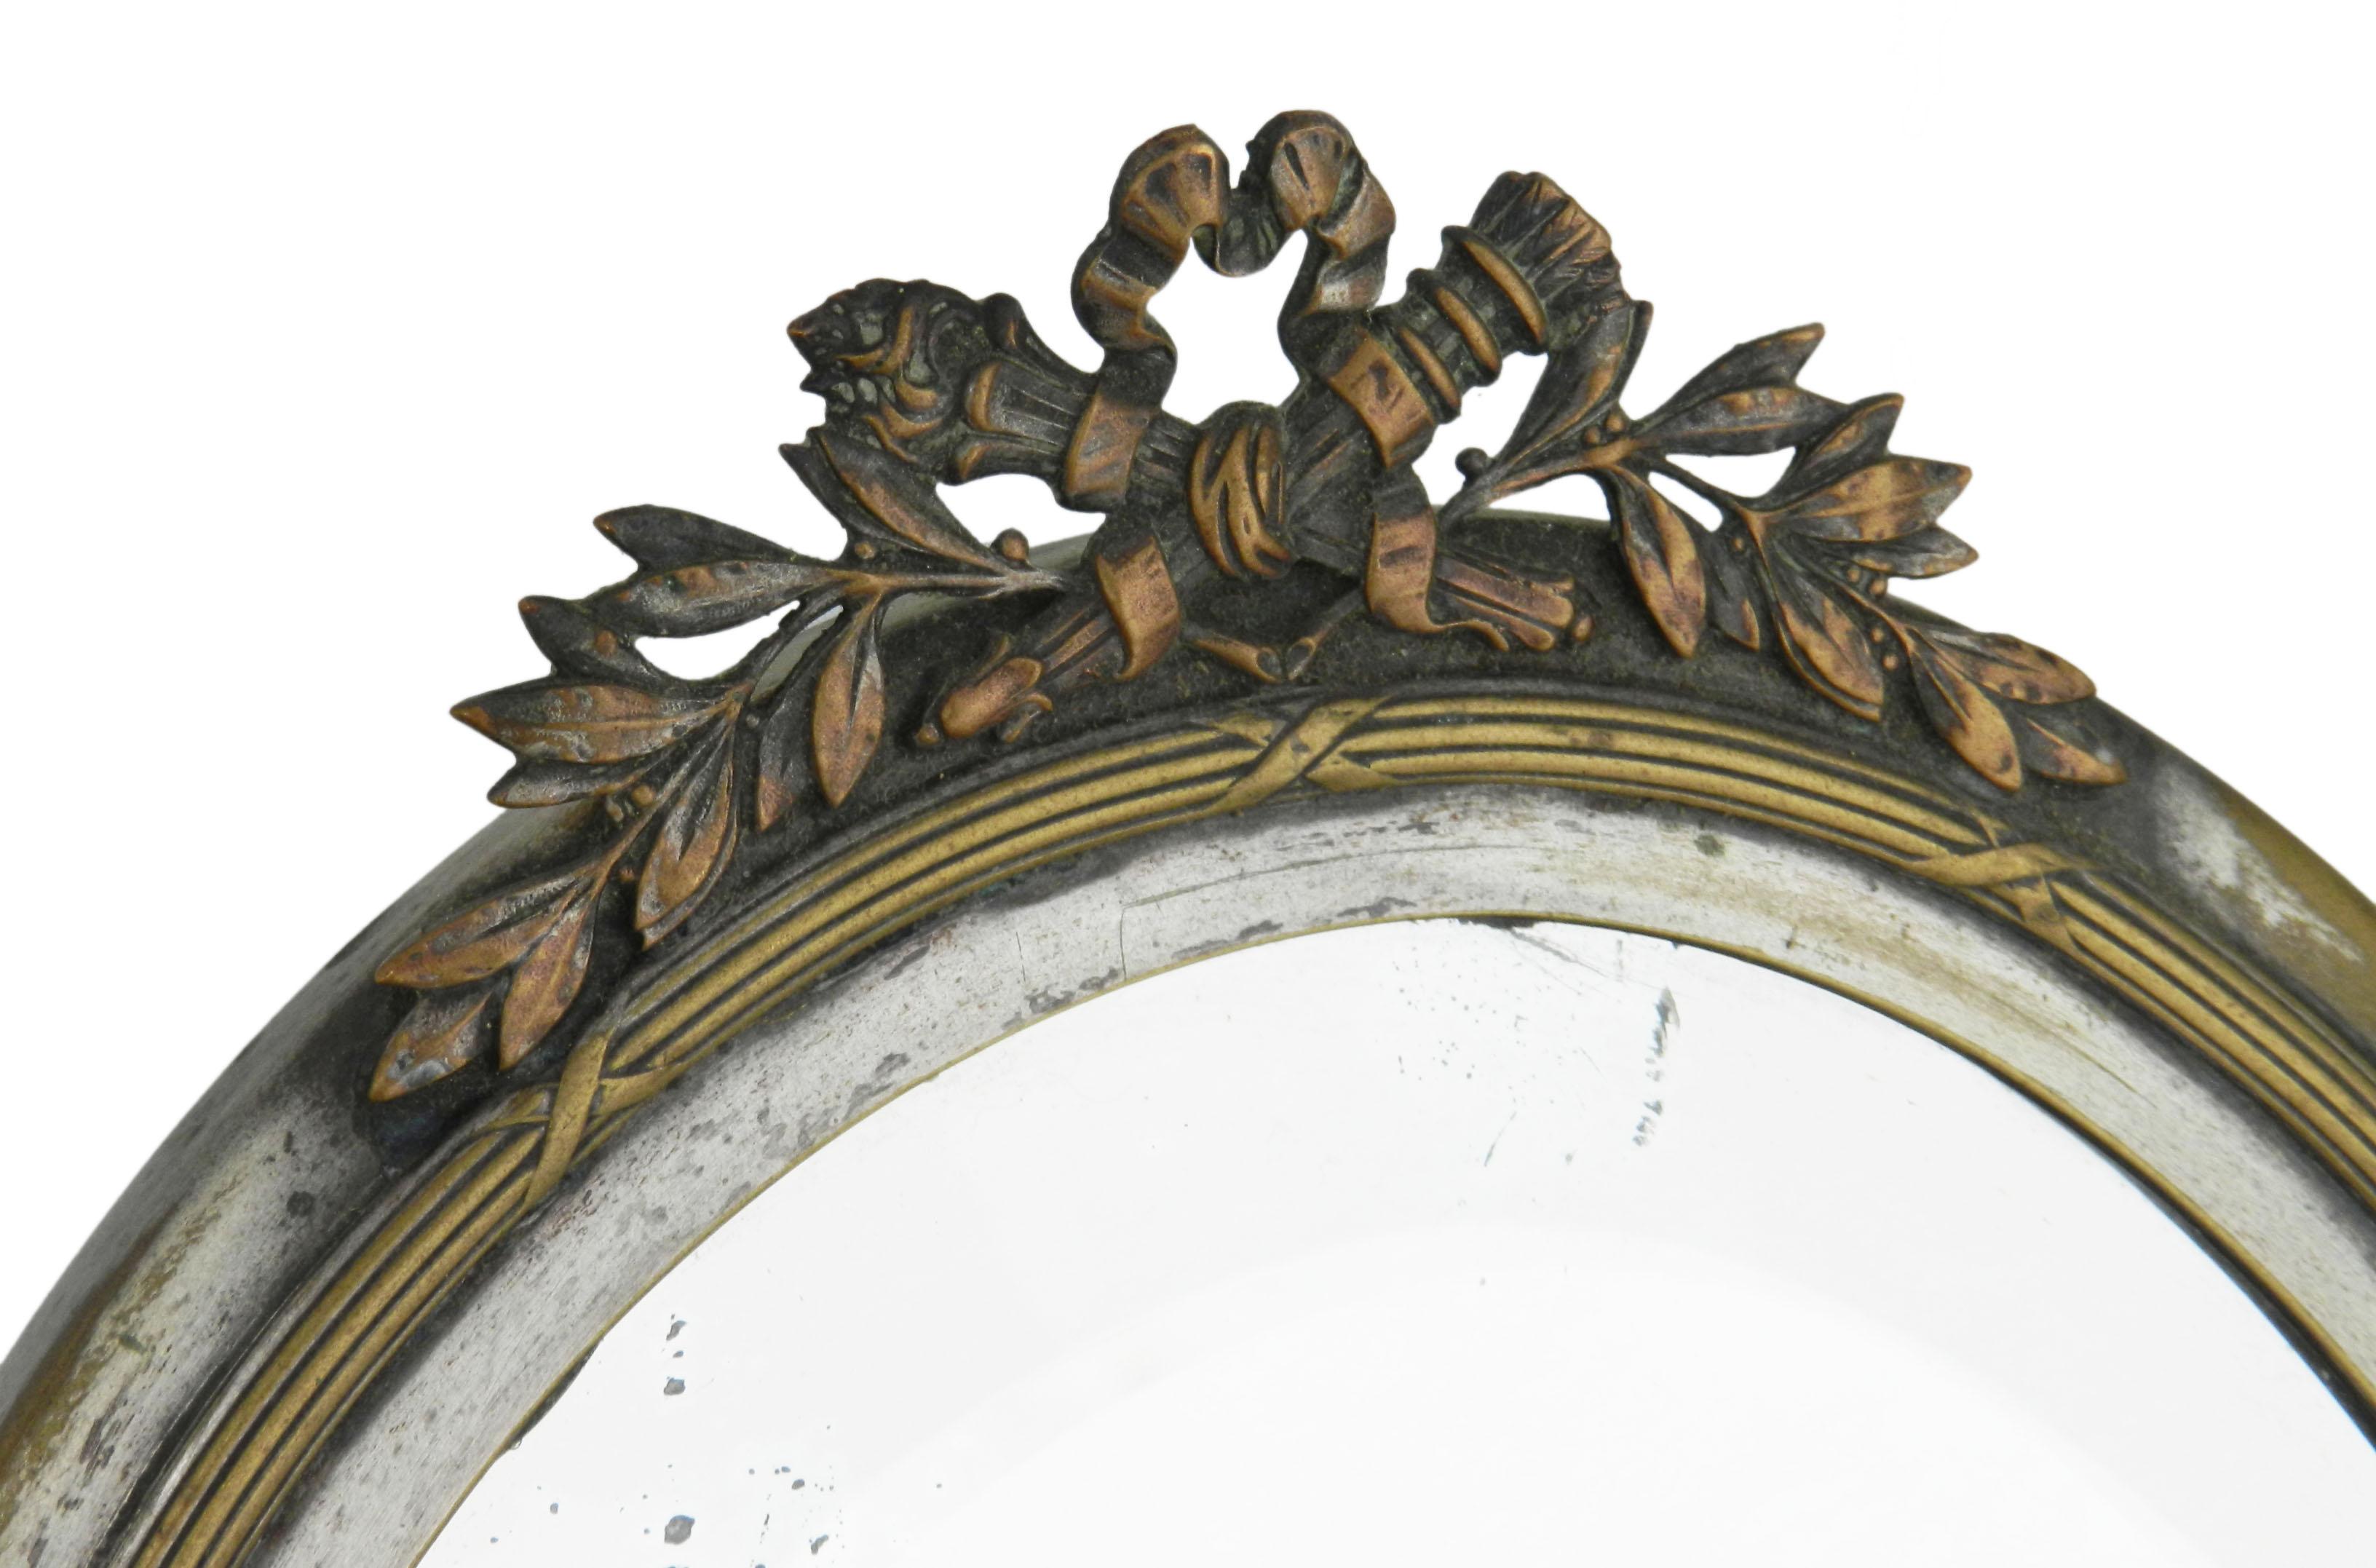 Spiegel mit Ständer spätes 19. Jahrhundert Louis XVI Stil
Herrlich verunstaltete Bronze, Metall etc.
Es gibt sehr kleine Flecken auf dem Spiegel (nicht so schlimm)
Kostenloser Versand in die USA, EU, UK bitte fragen Sie uns nach anderen Ländern